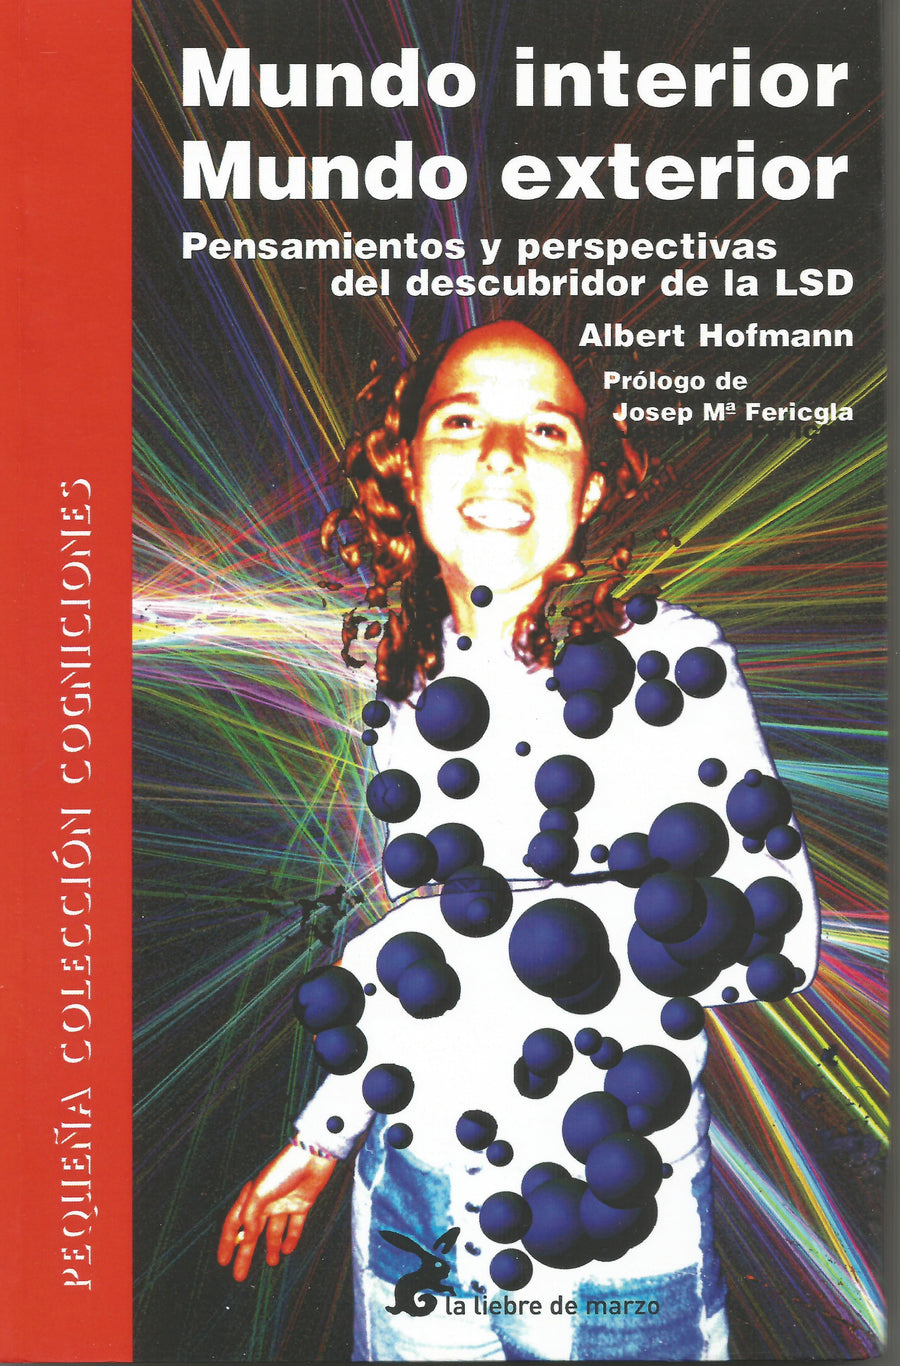 Mundo interior mundo exterior.  Pensamientos y perspectivas del descubridor de la LSD - NALANDA | Tu motor de búsqueda interna